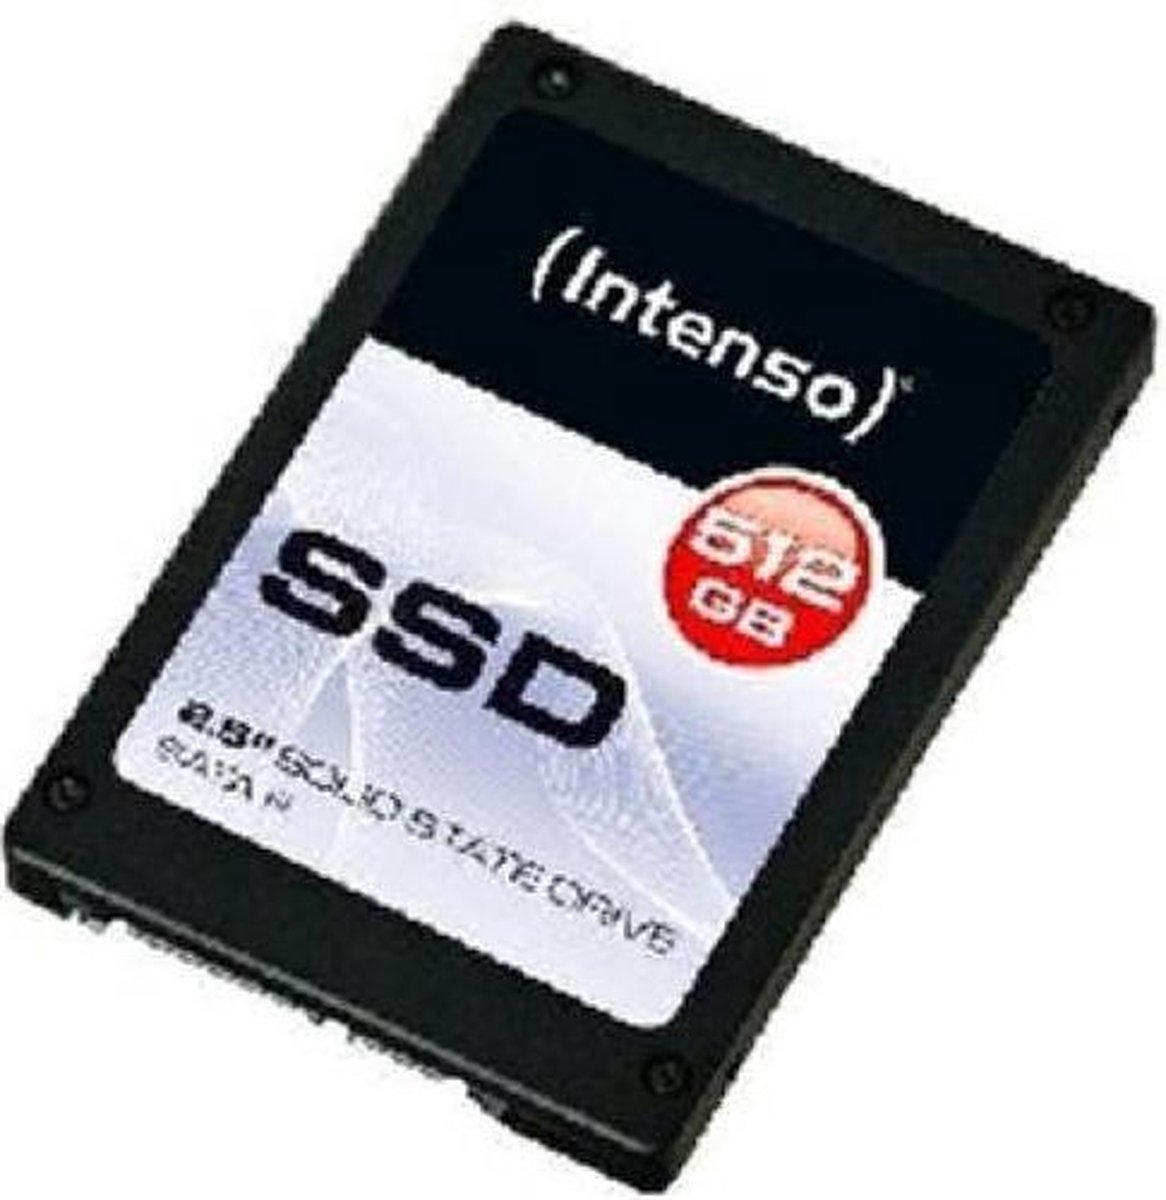 Intenso SSD 512 GB 2,5'' SSD SATA III Top Performance